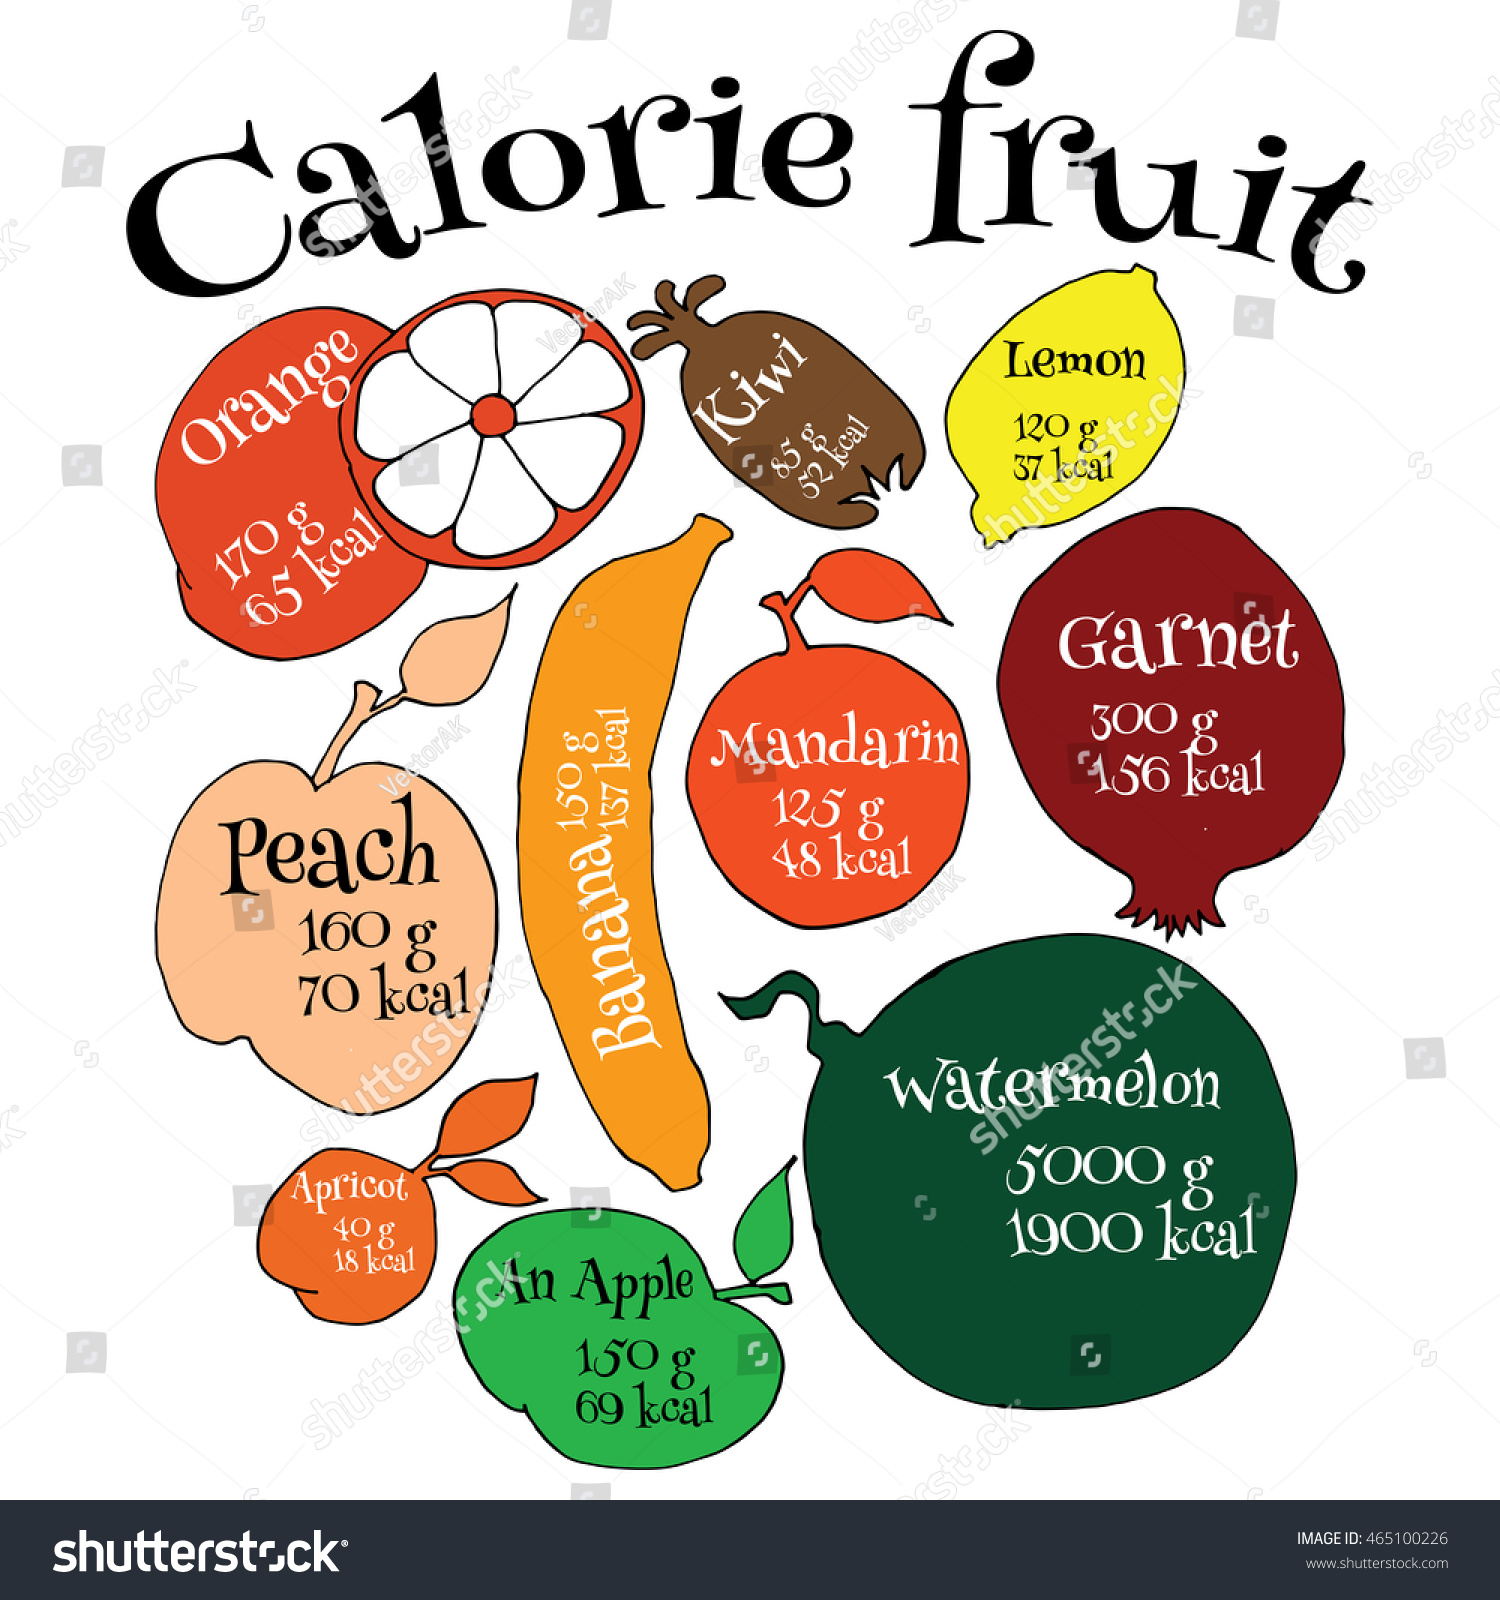 Vector Illustration. Description Of Each Calorie Fruit. Hand Drawn